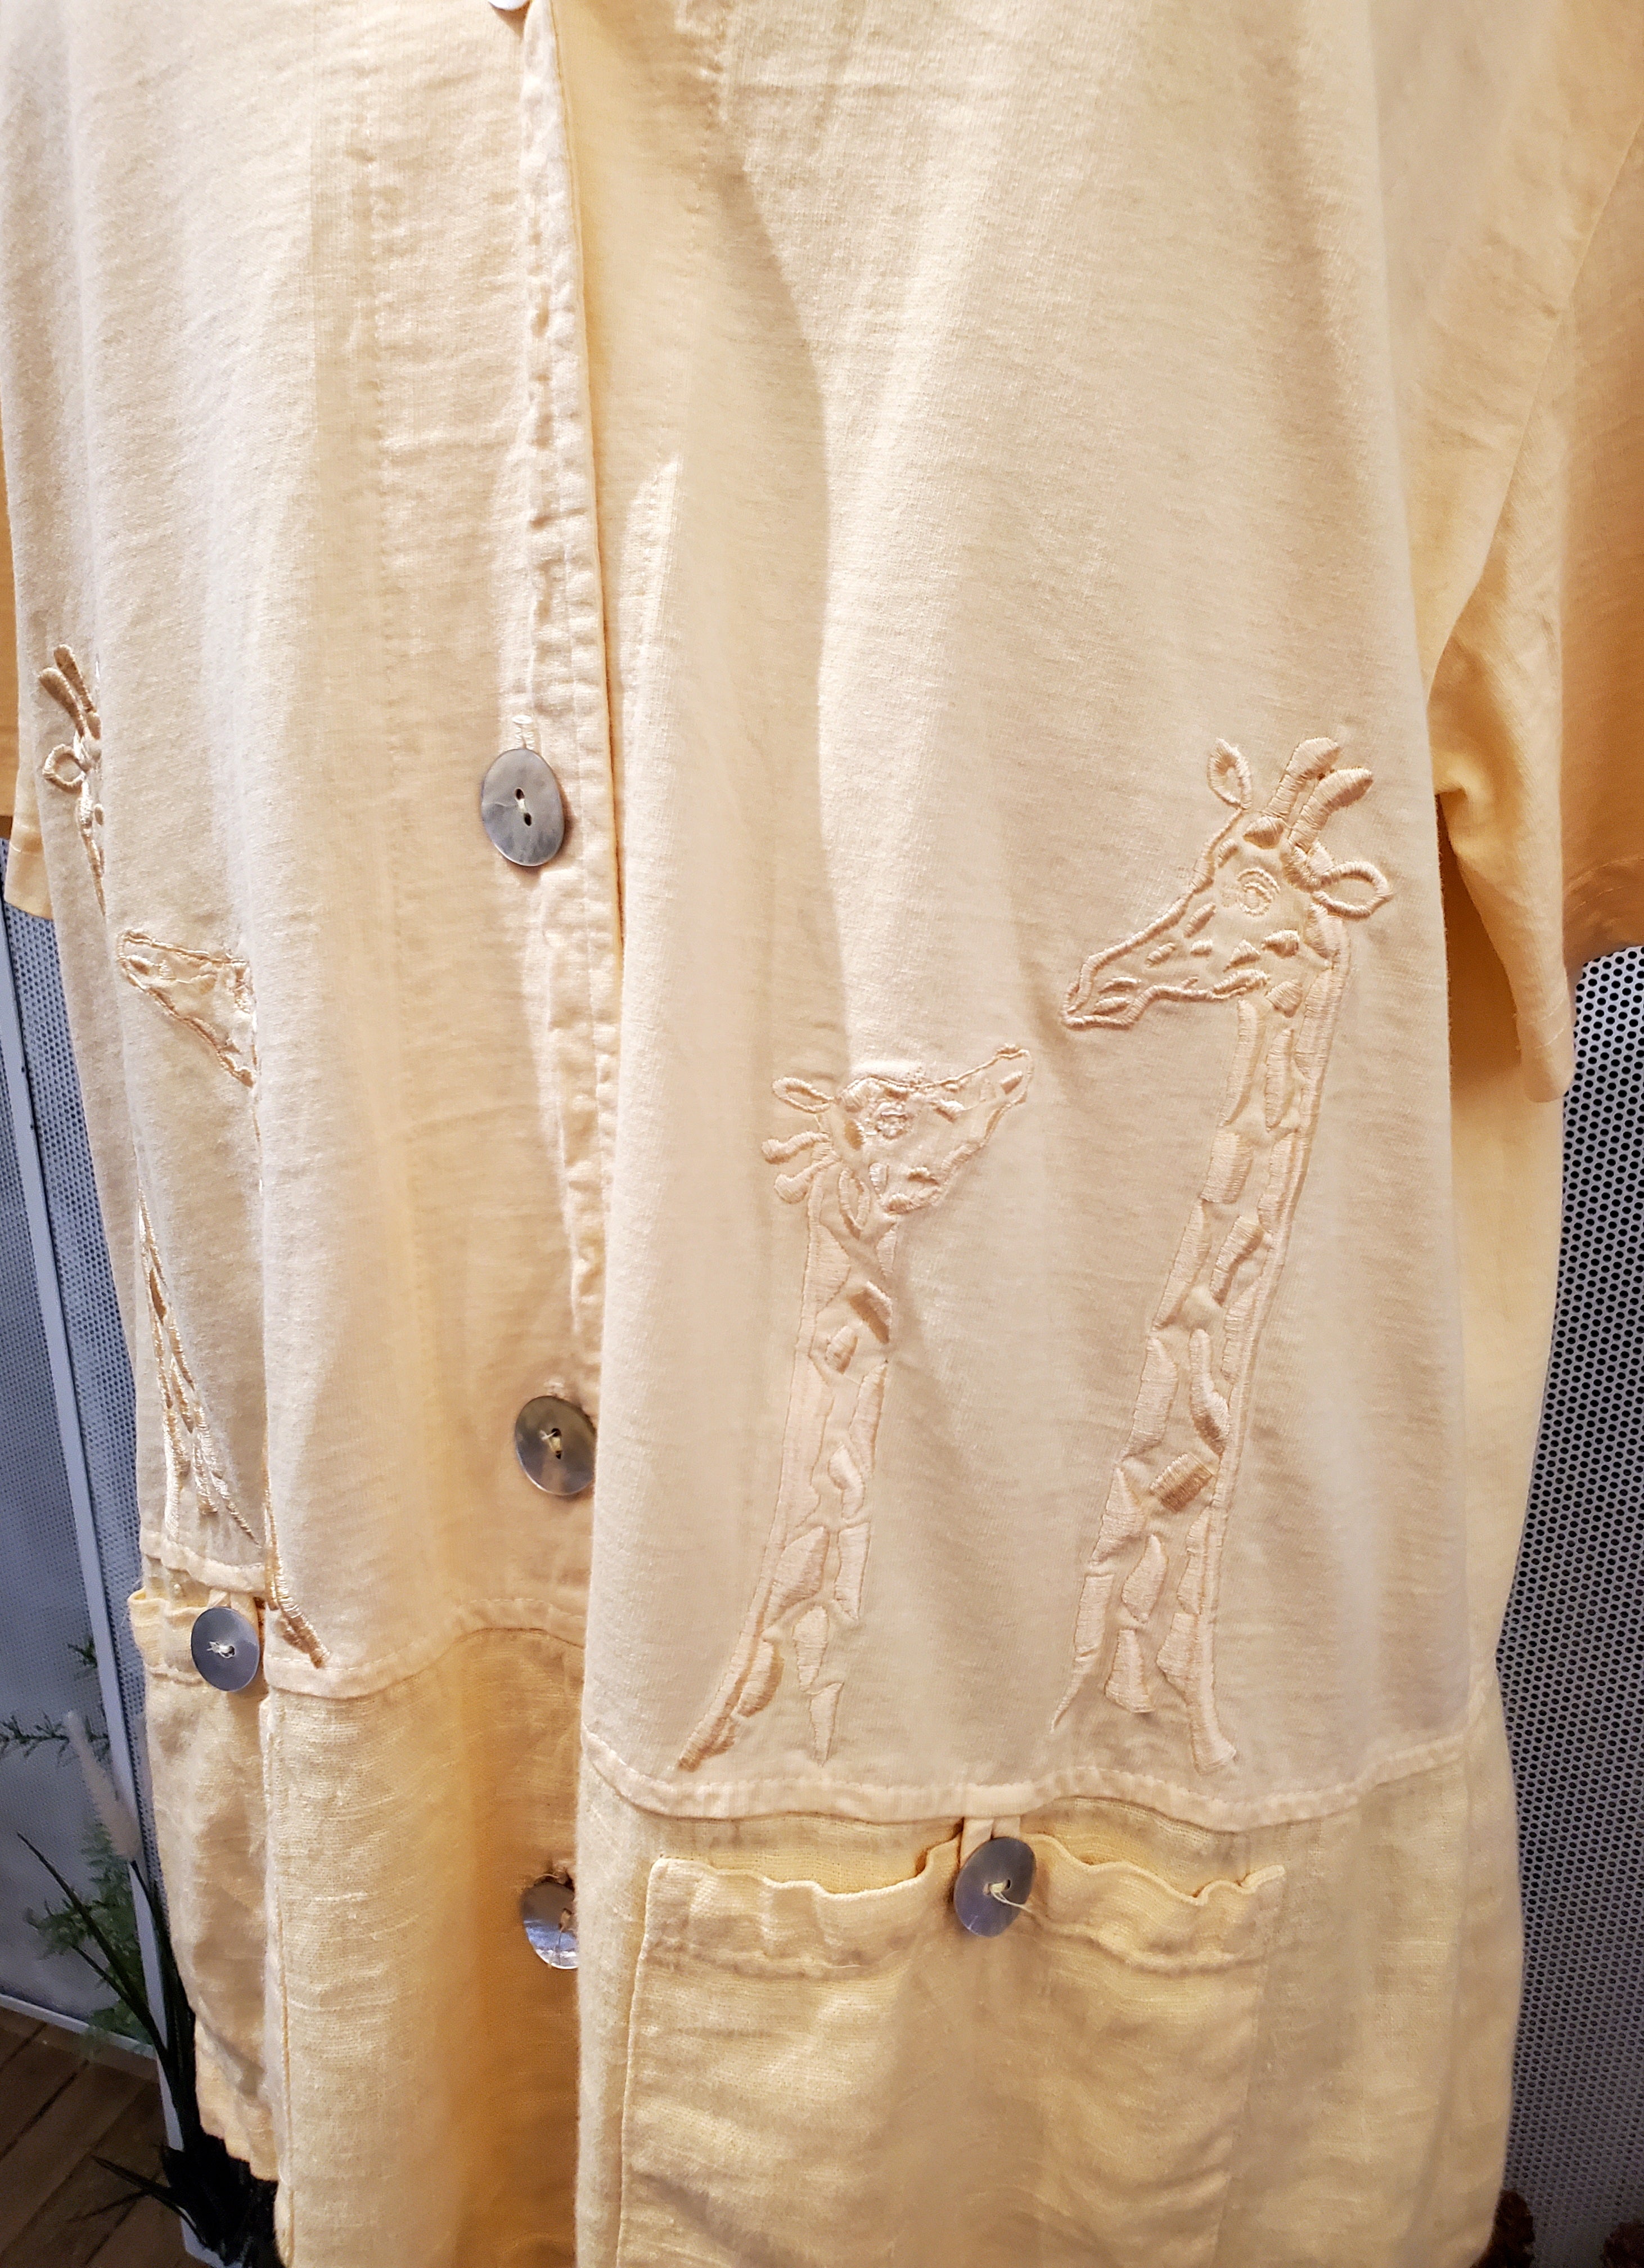 1990’s Giraffe Themed Shirt